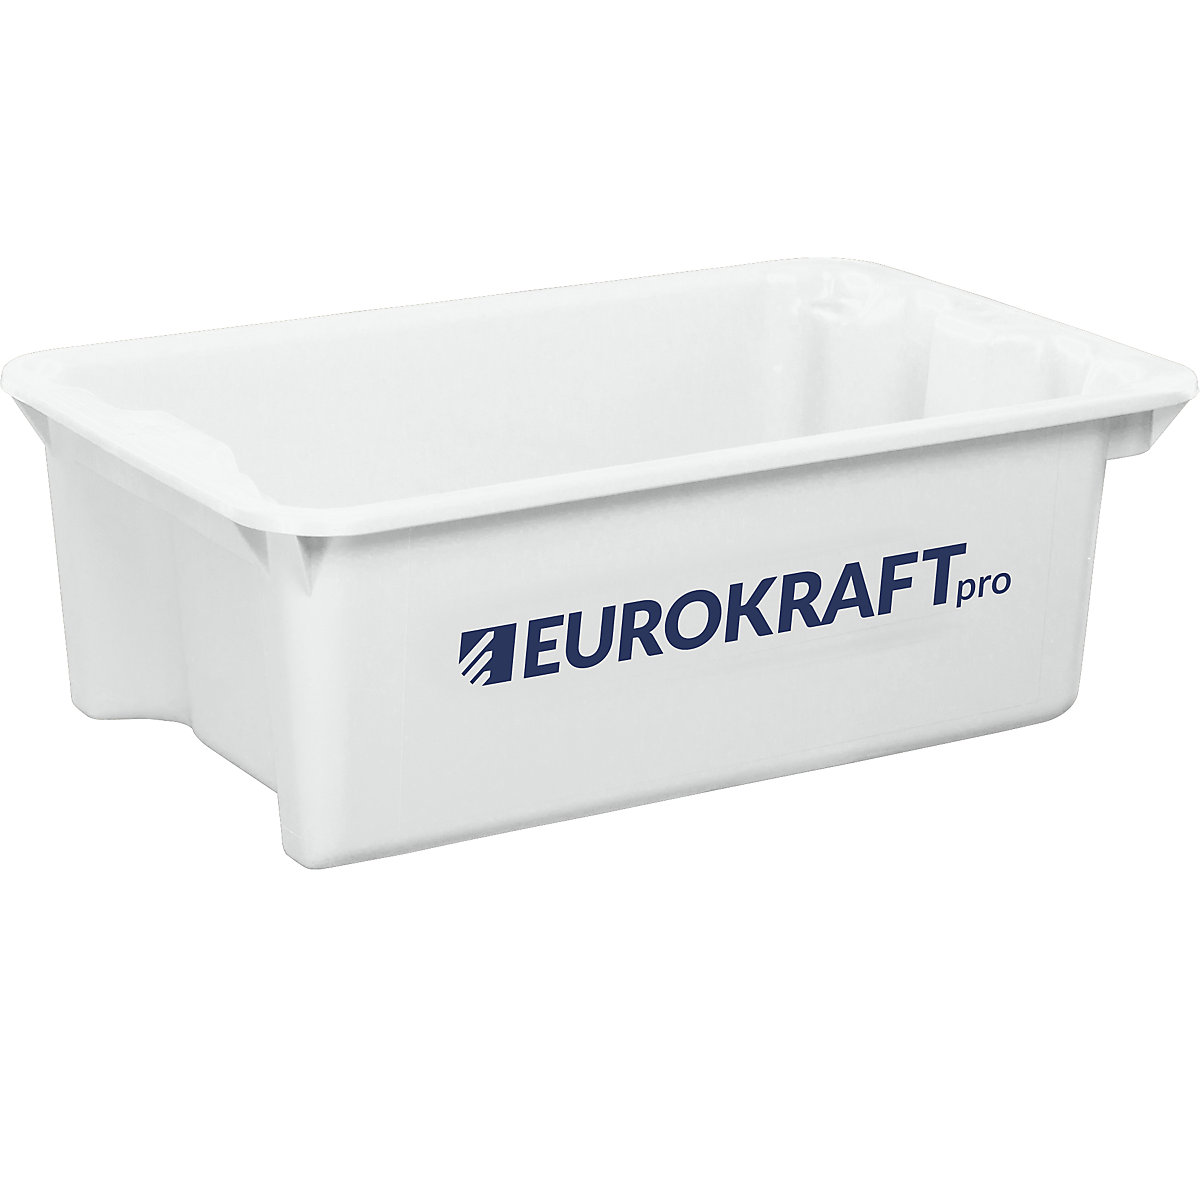 EUROKRAFTpro – Obrotowy pojemnik do ustawiania w stos z polipropylenu dopuszczonego do kontaktu z żywnością, poj. 34 l, opak. 3 szt., ścianki i dno zamknięte, kolor naturalny